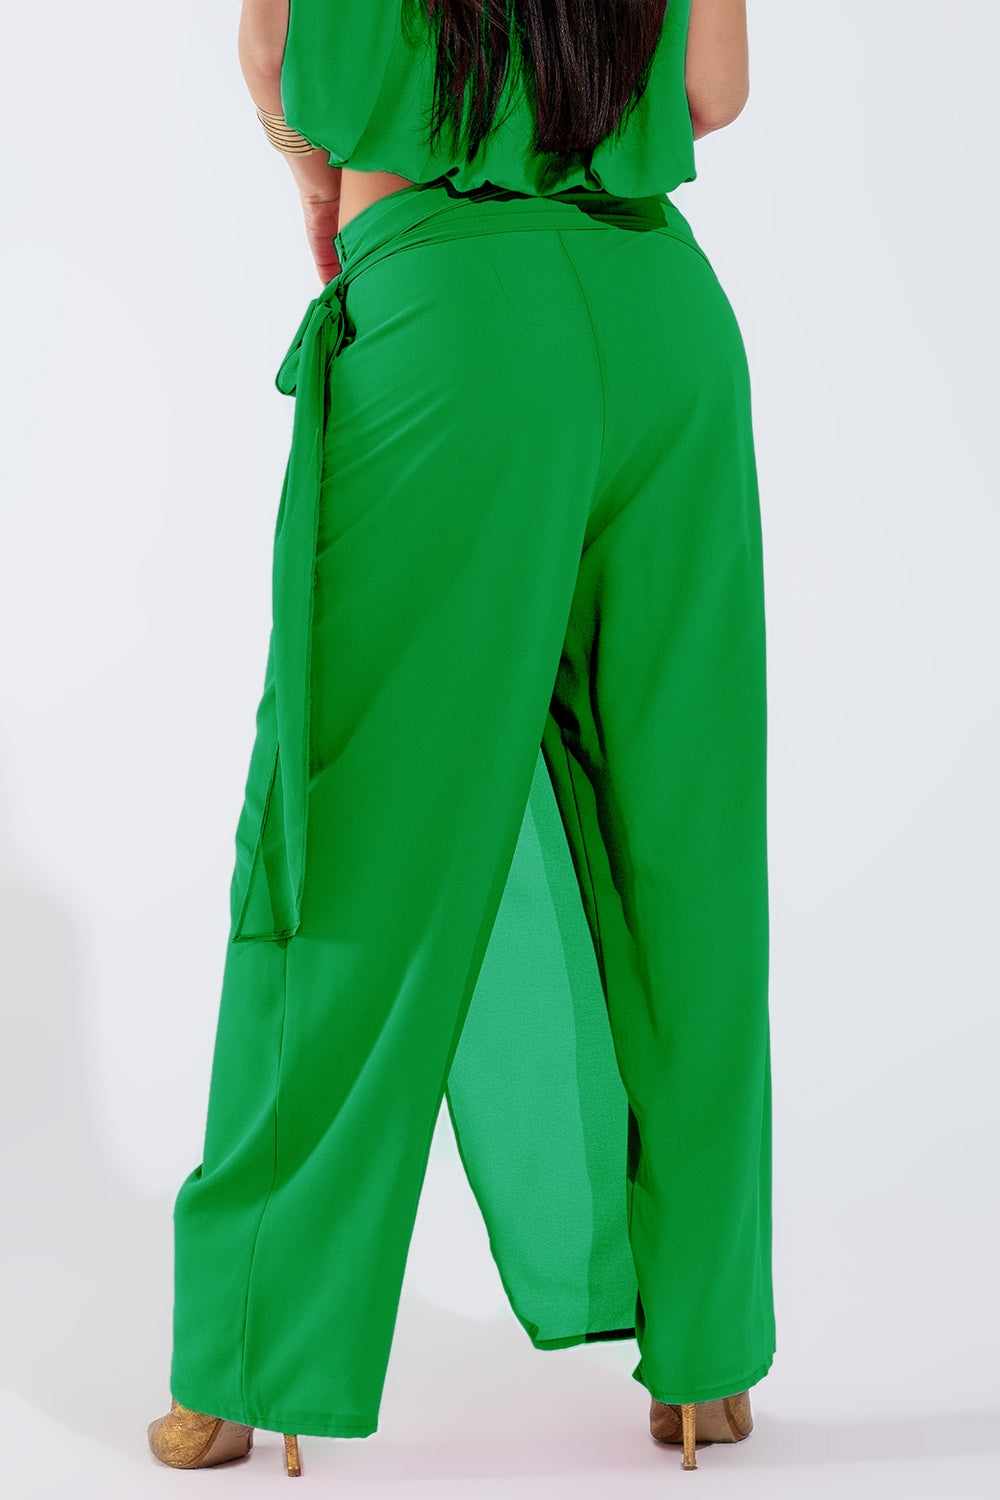 Wijde groene broek met overslagrok gestrikt aan de zijkant